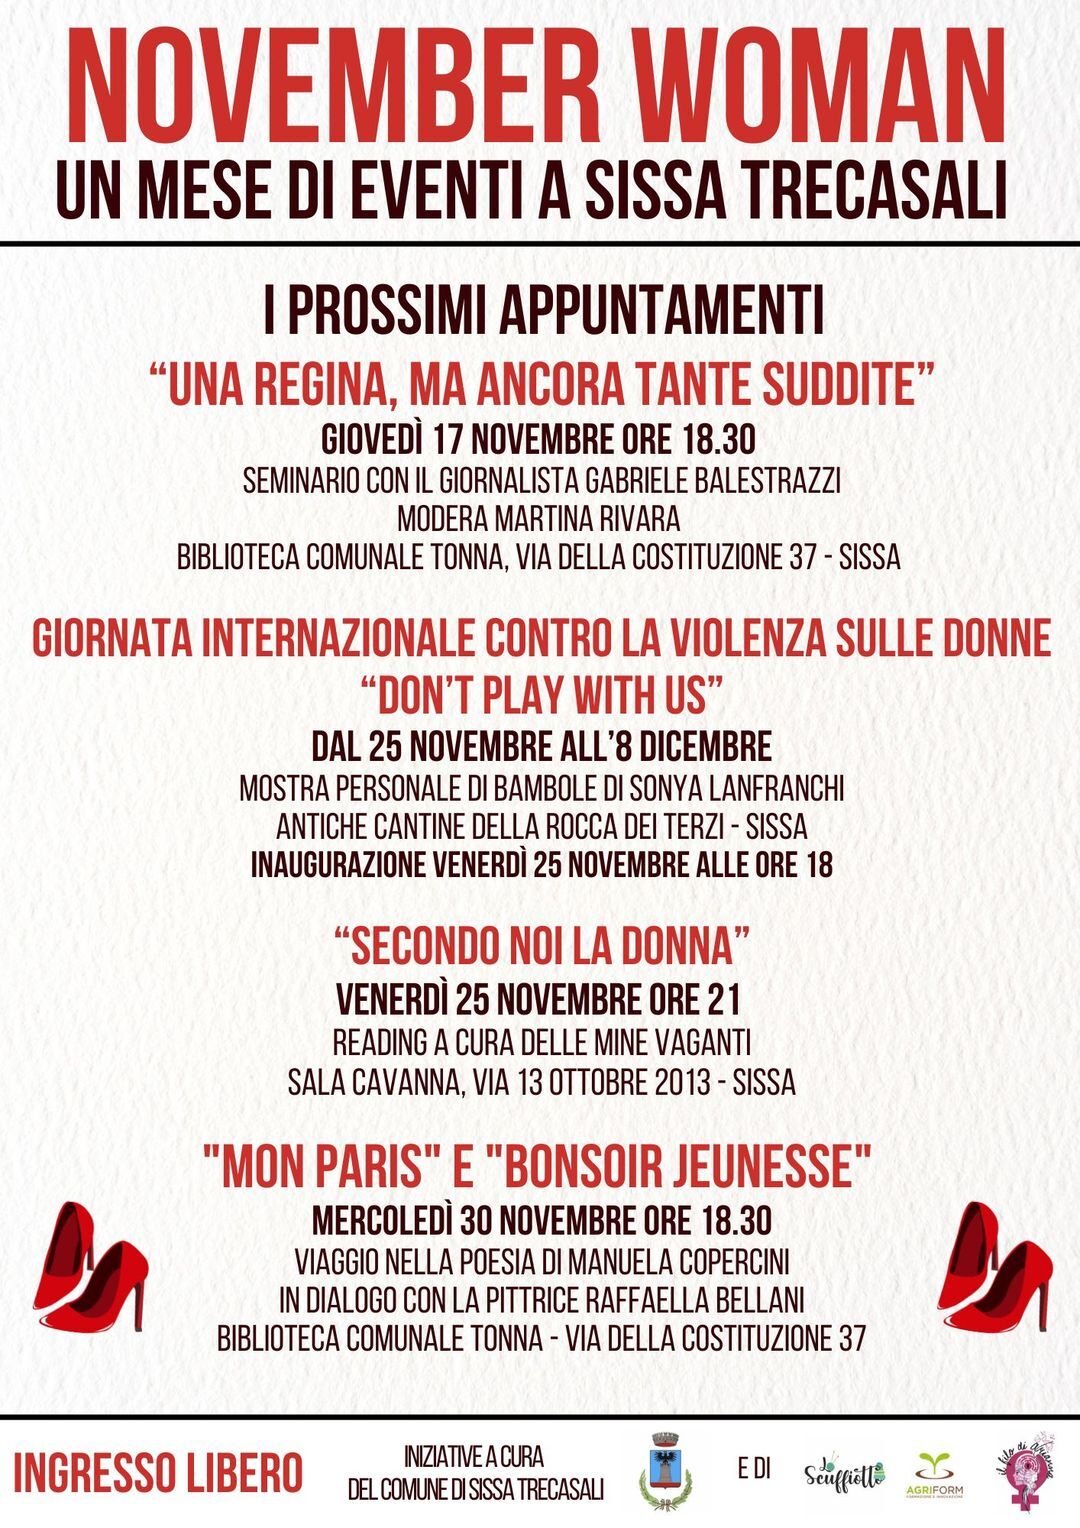 “November Woman”, un mese di eventi dedicati alle donne  a Sissa; IL 17 NOVEMBRE SEMINARIO  CON GABRIELE BALESTRAZZI